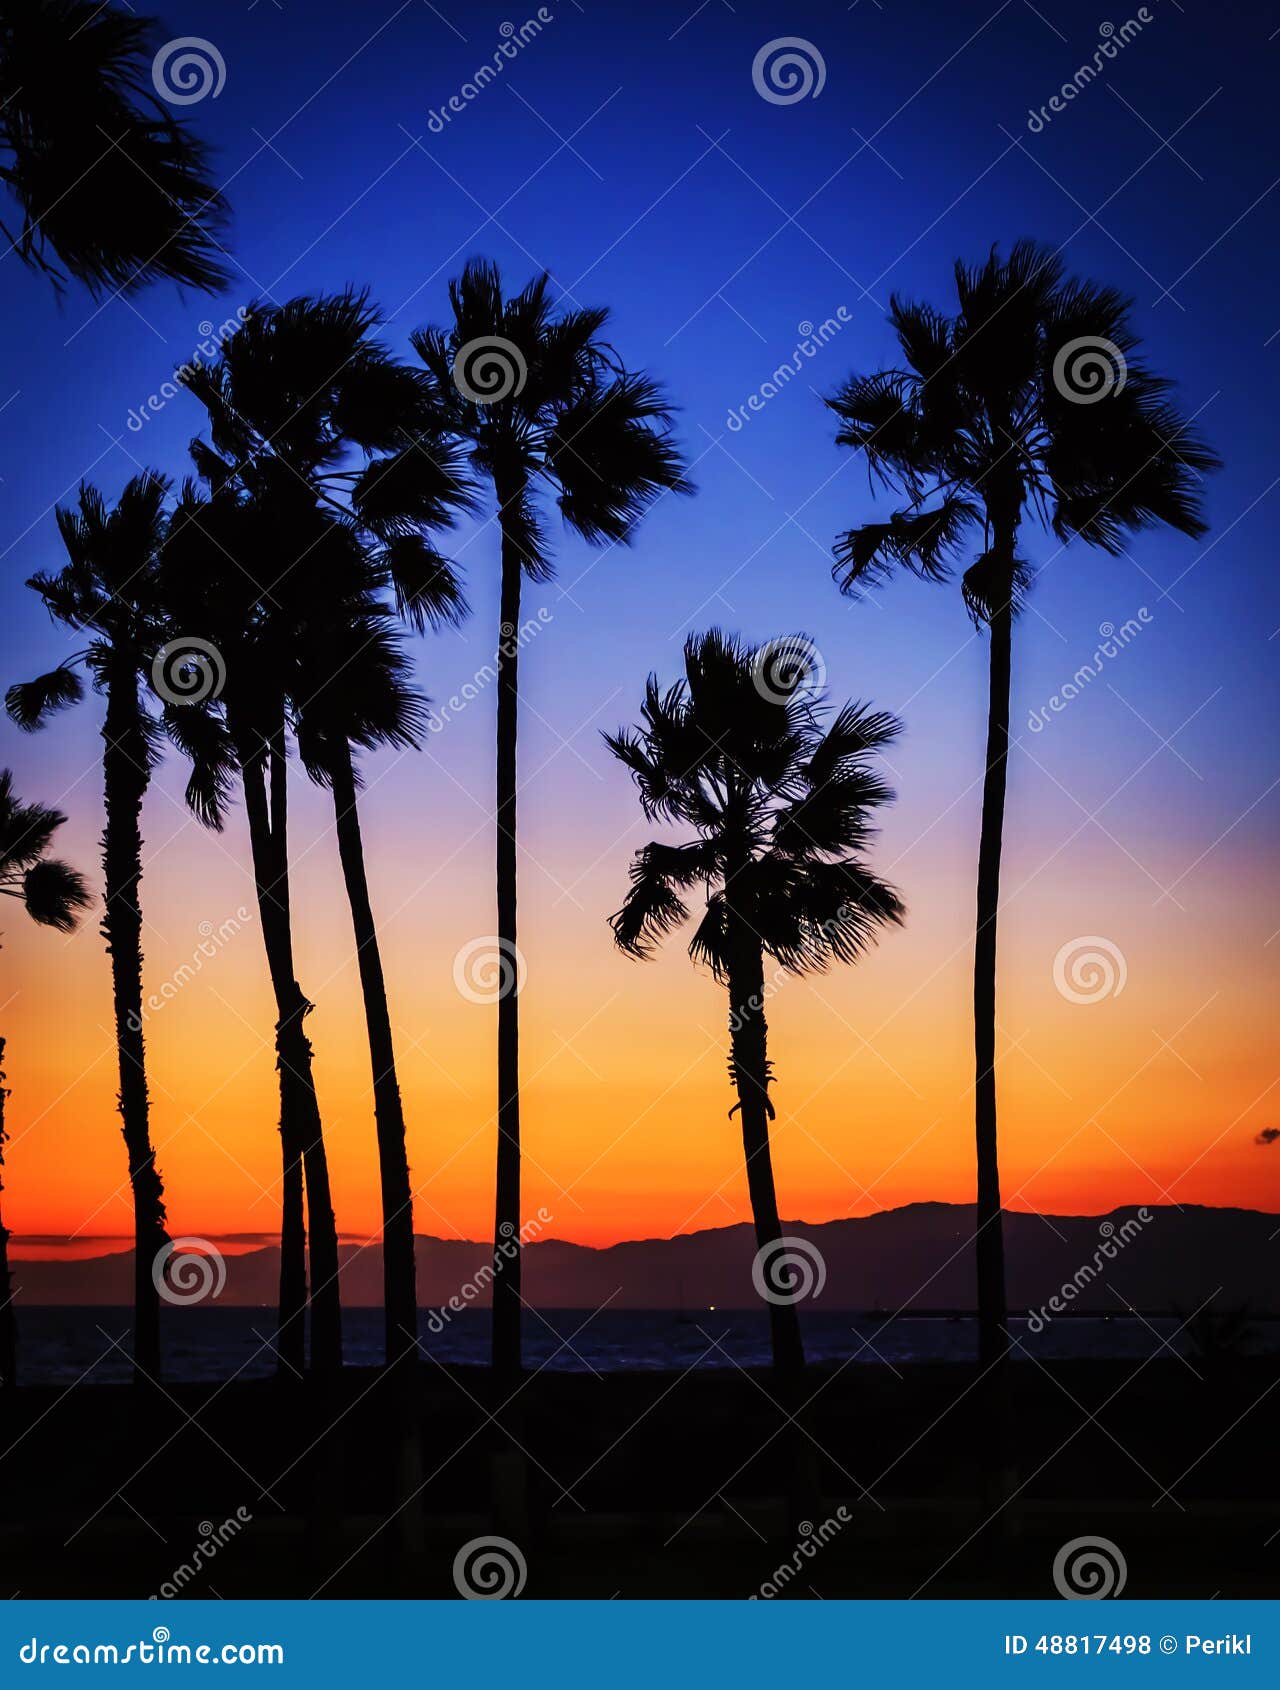 Palm trees at sunset stock photo. Image of angeles, dusk - 48817498